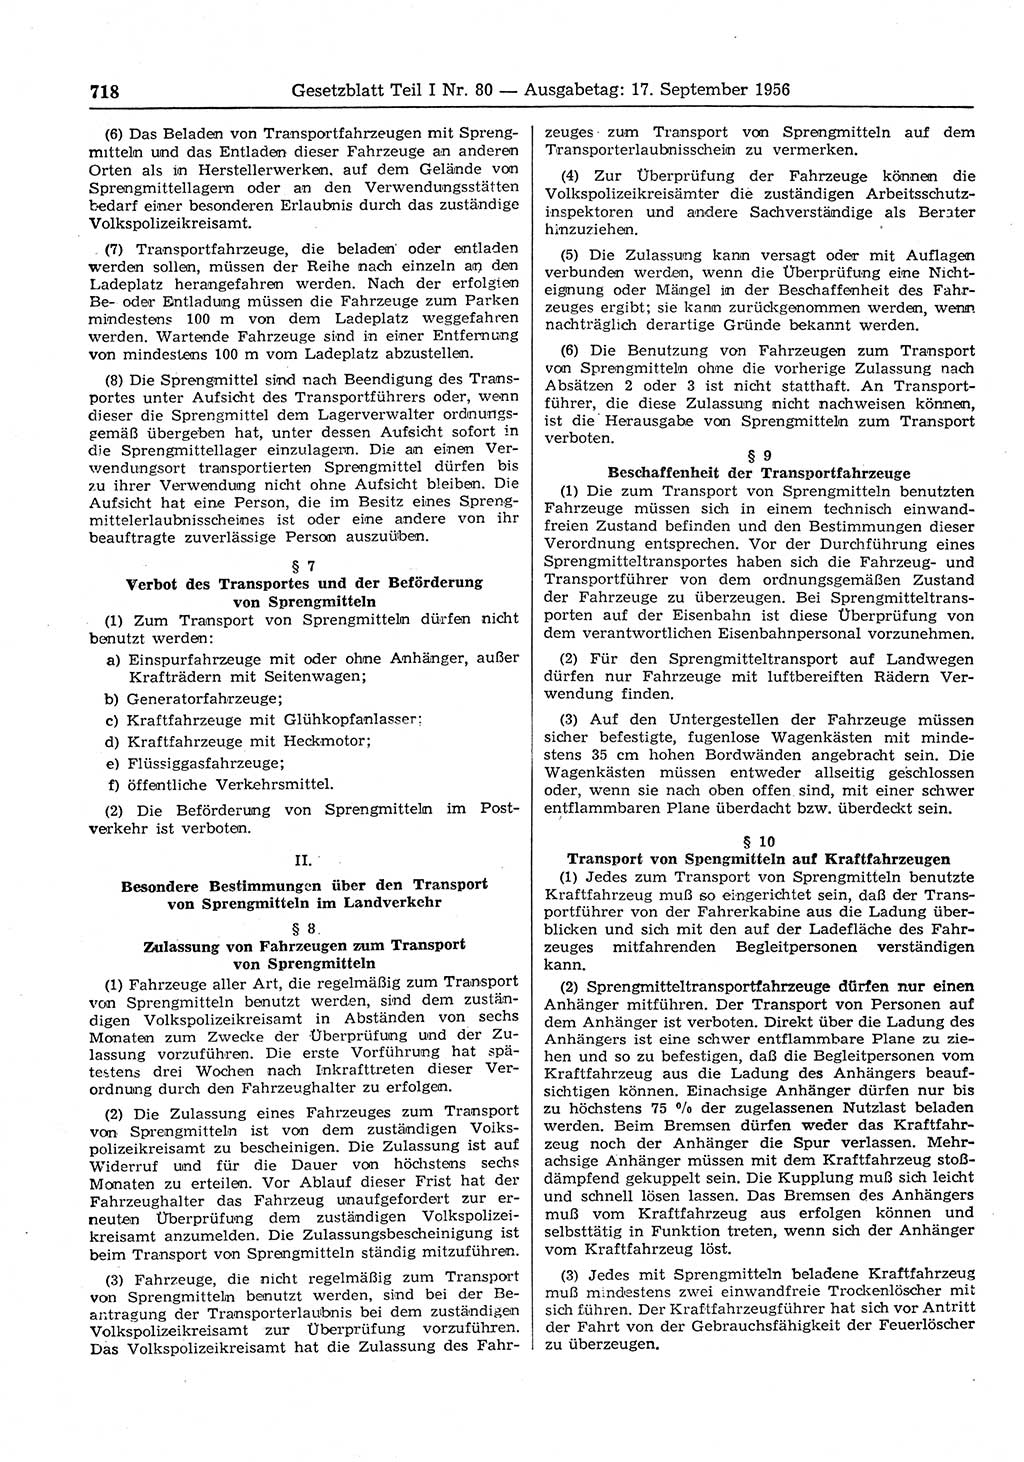 Gesetzblatt (GBl.) der Deutschen Demokratischen Republik (DDR) Teil Ⅰ 1956, Seite 718 (GBl. DDR Ⅰ 1956, S. 718)